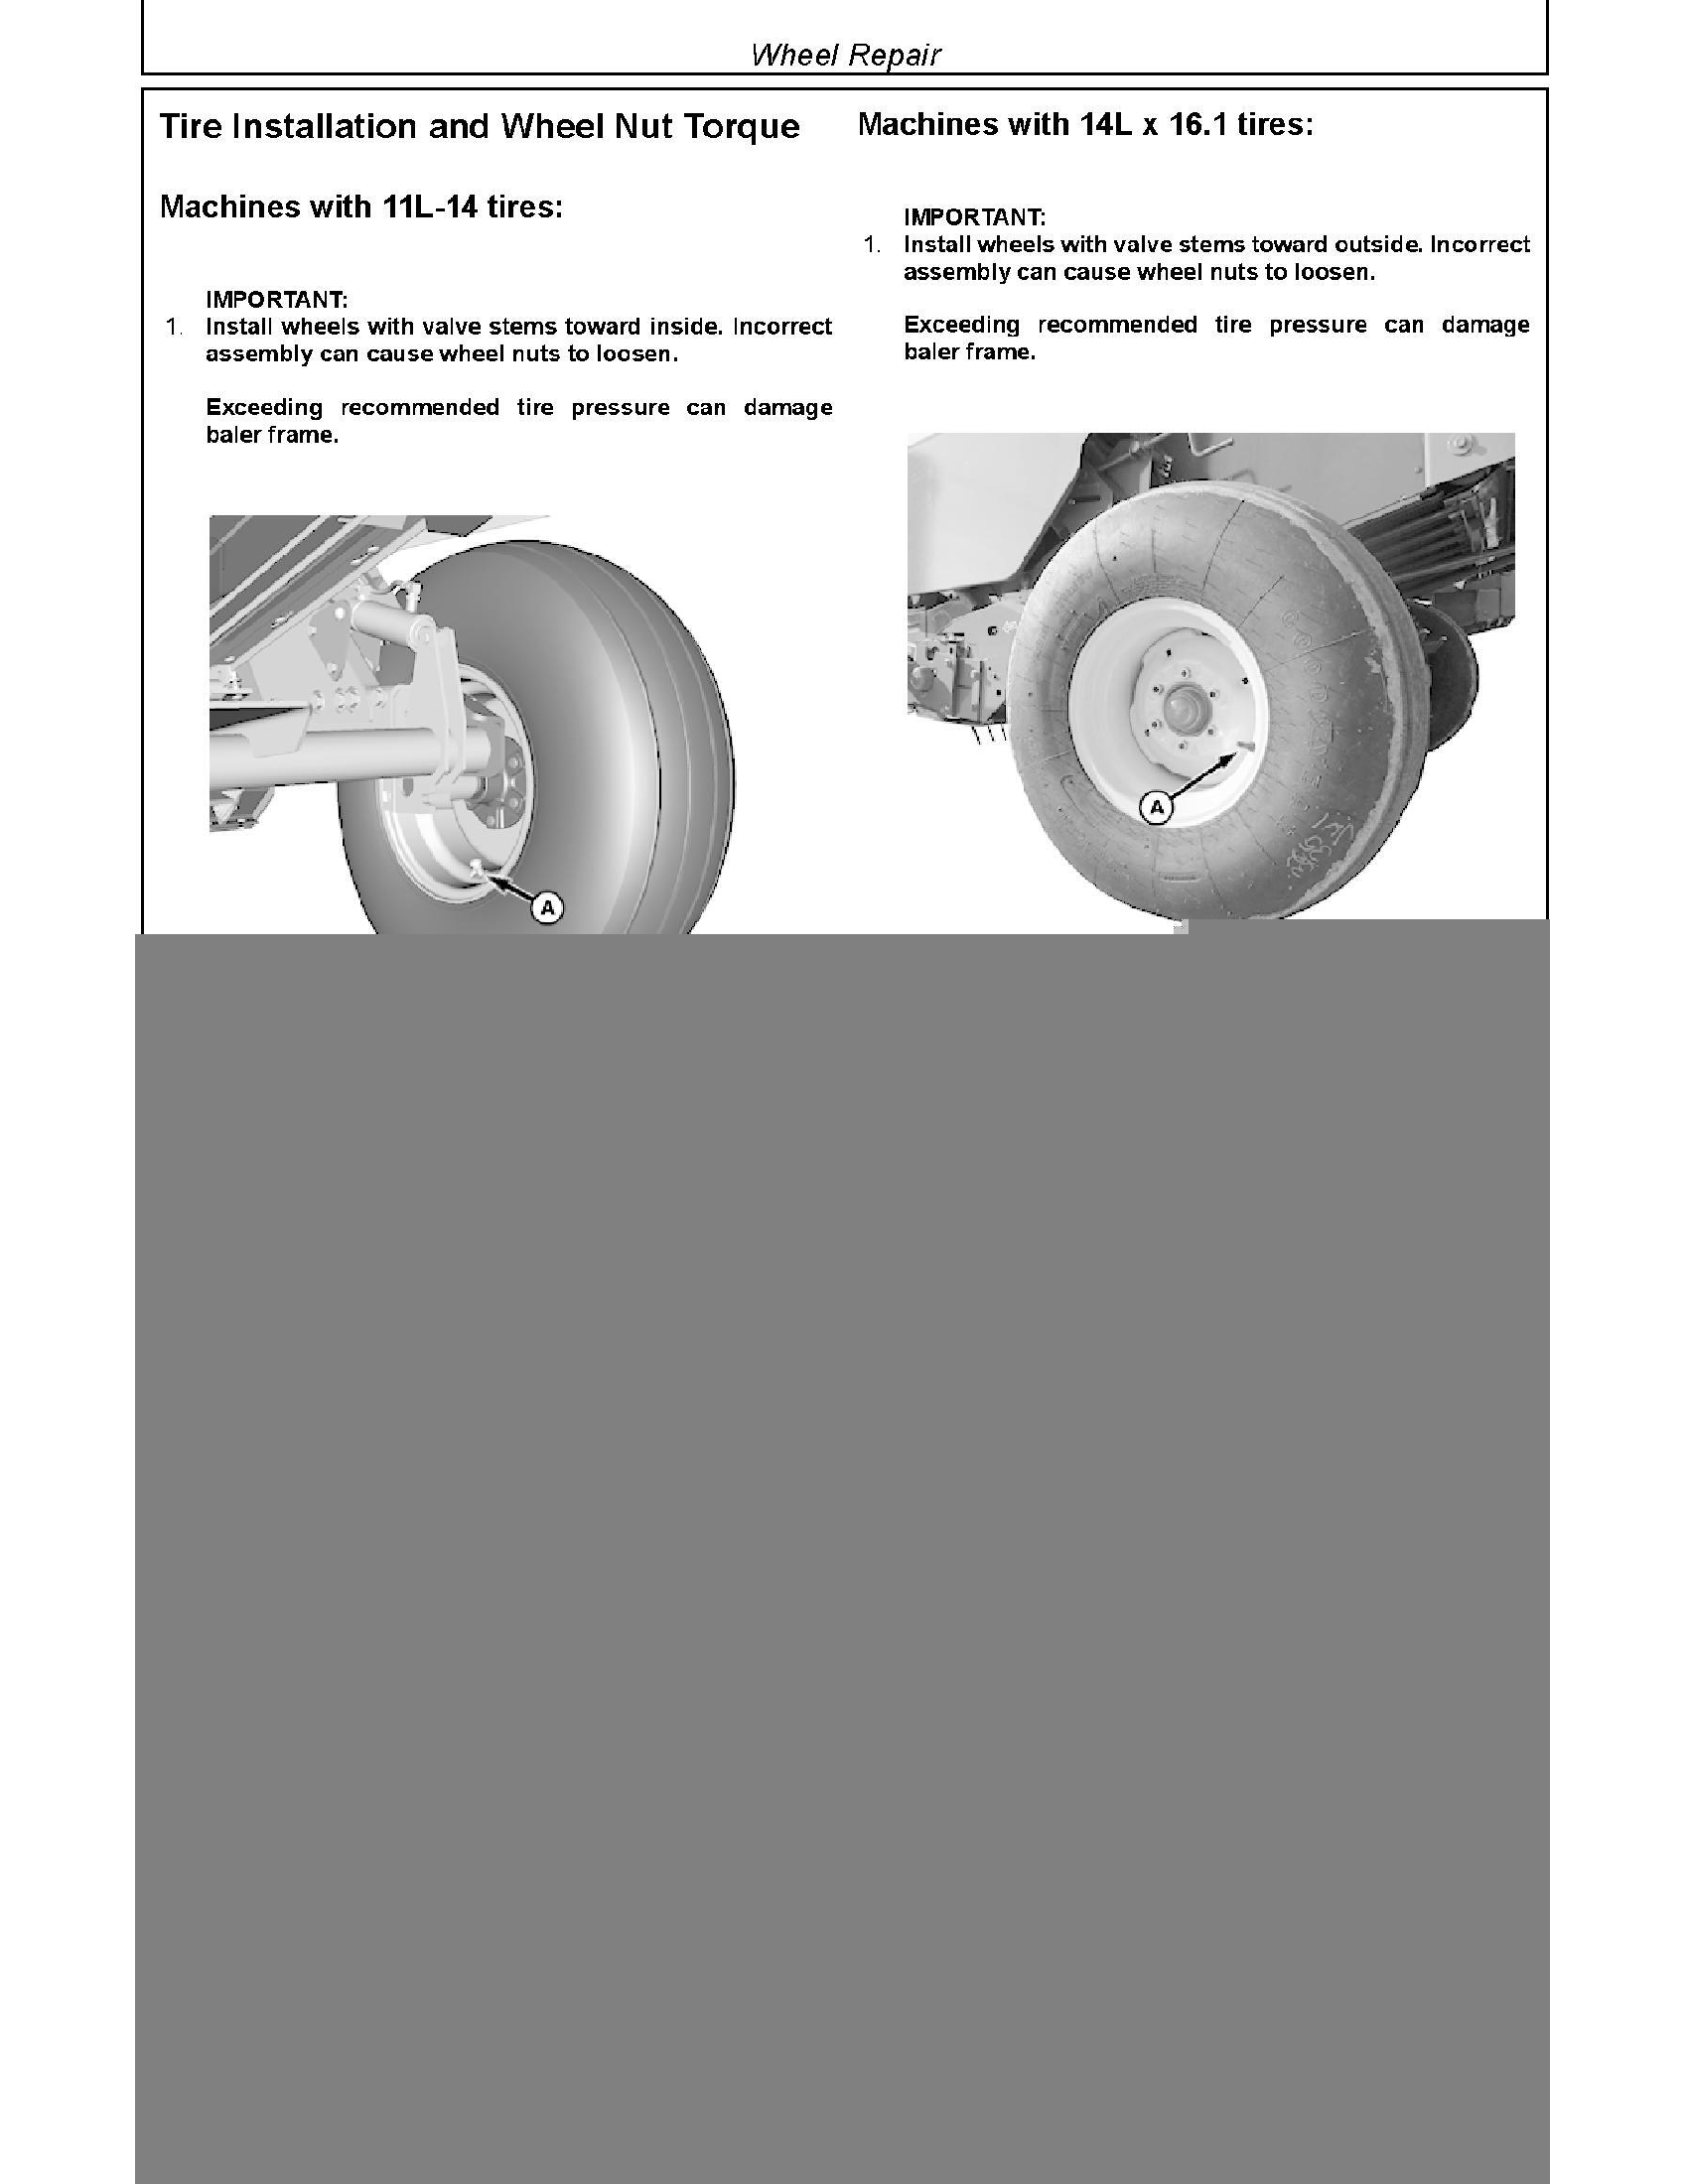 John Deere 859MH manual pdf